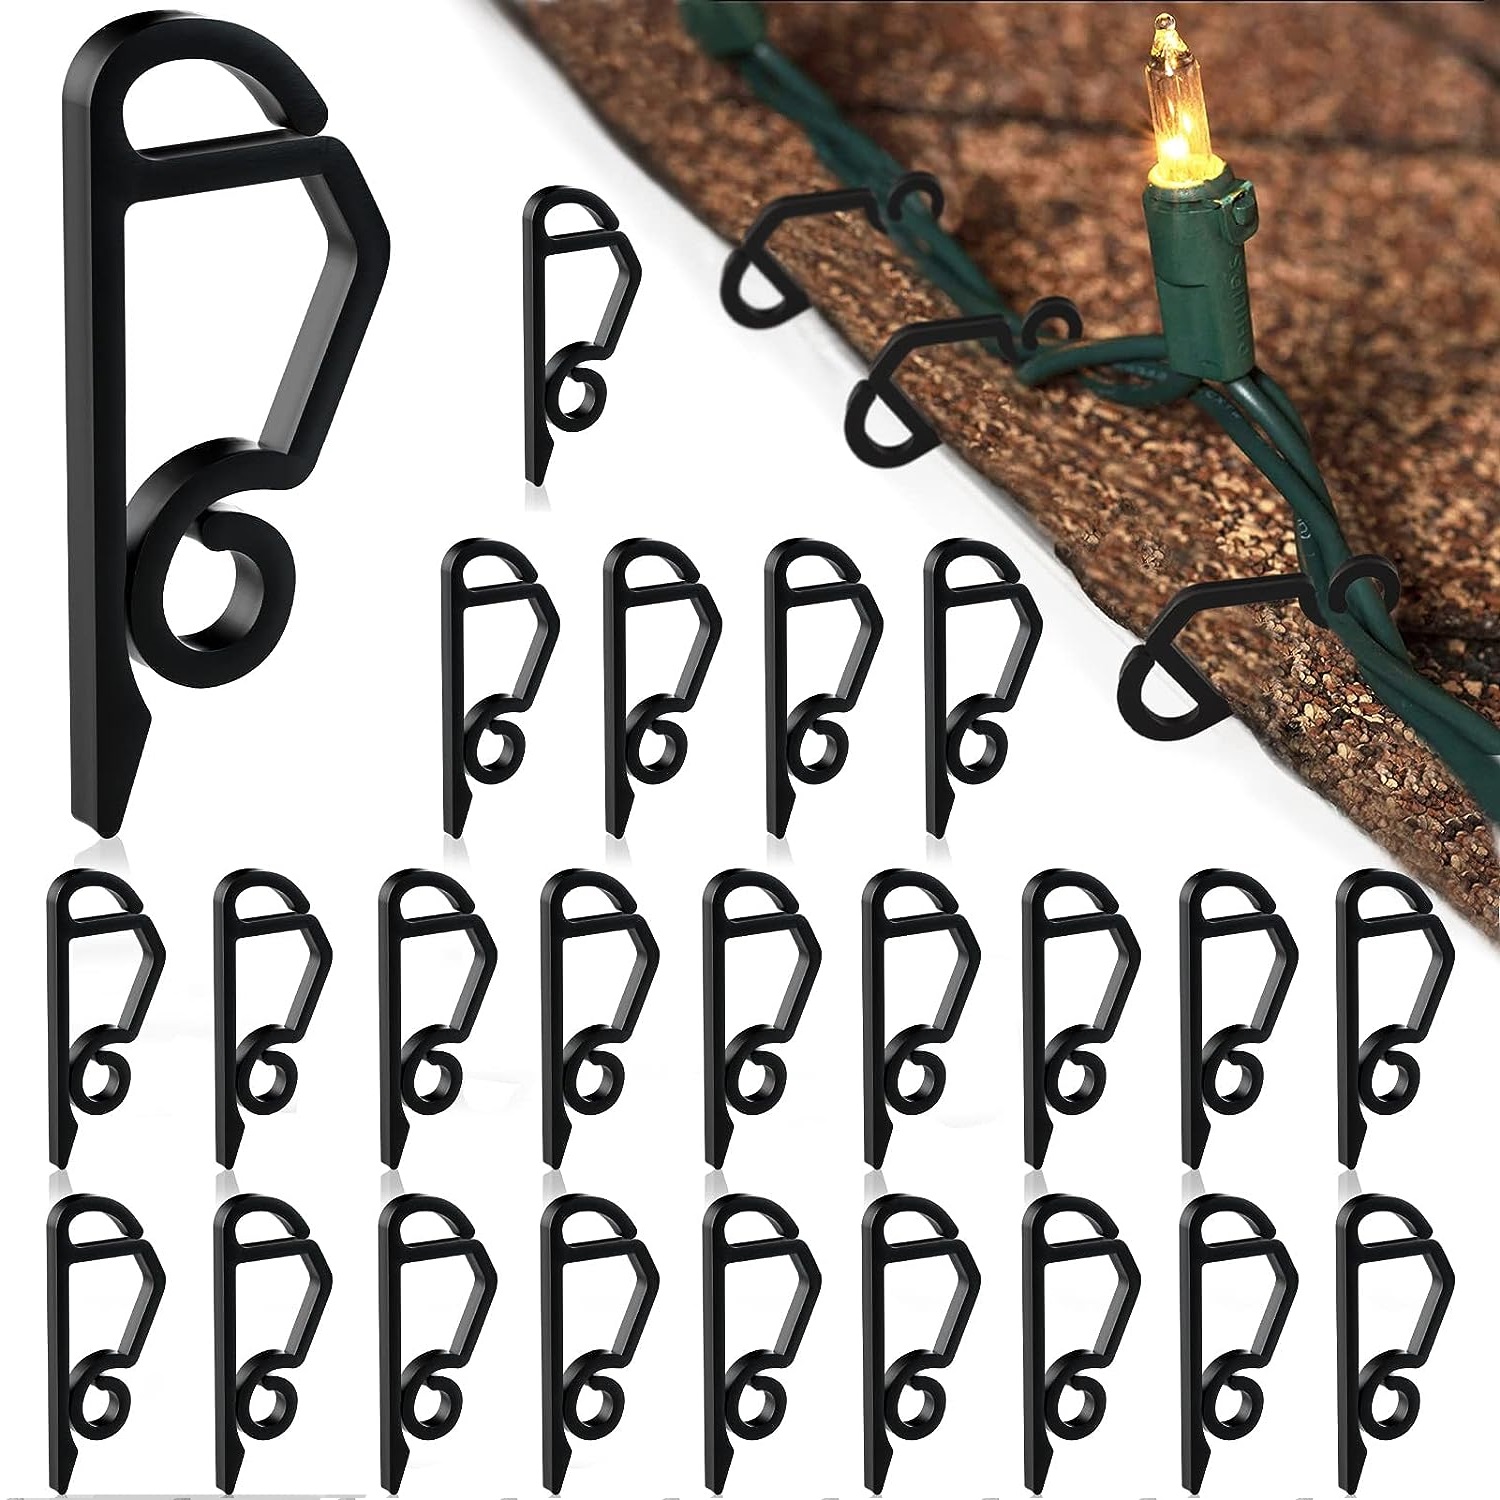 Q Hanger Hooks For Outdoor String Lights Christmas Light - Temu